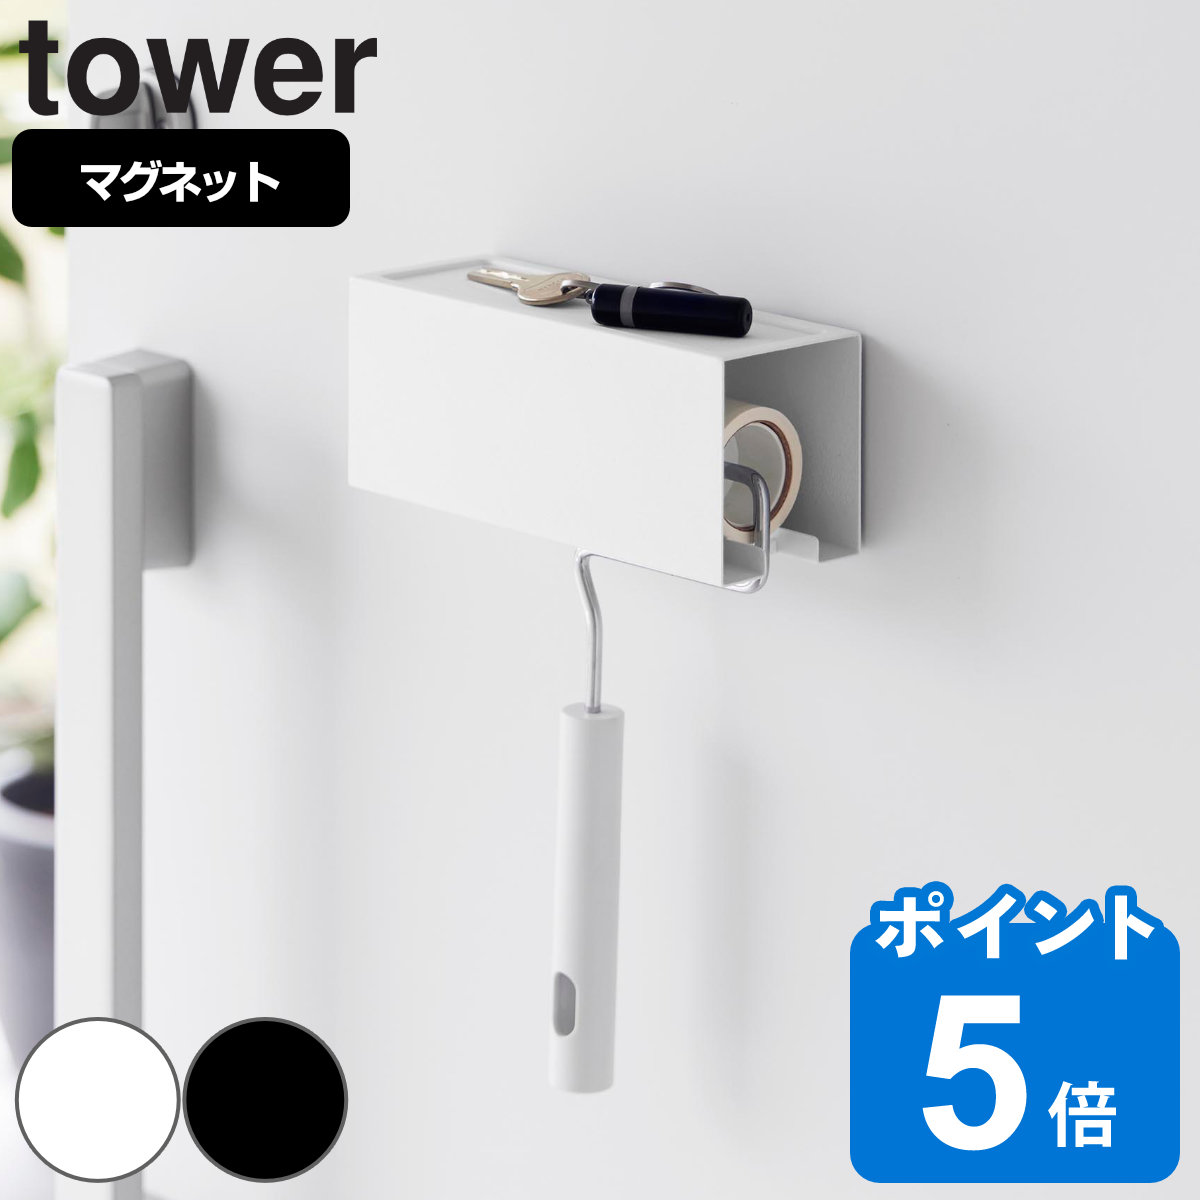 山崎実業 tower マグネットカーペットクリーナーホルダー タワー